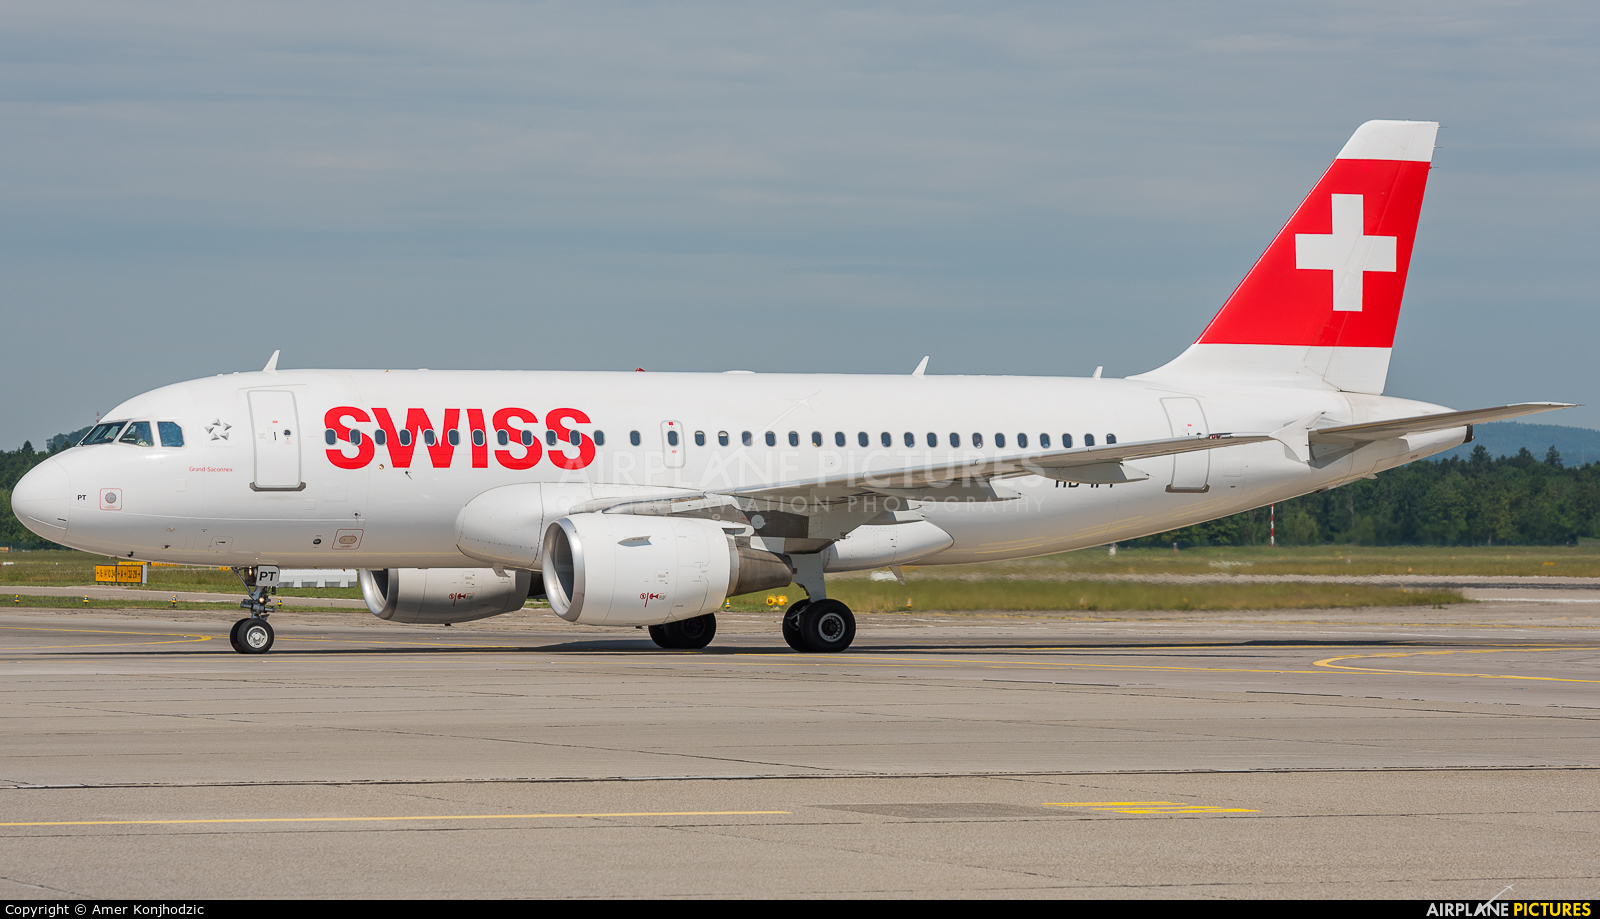 Swiss HB-IPT aircraft at Zurich